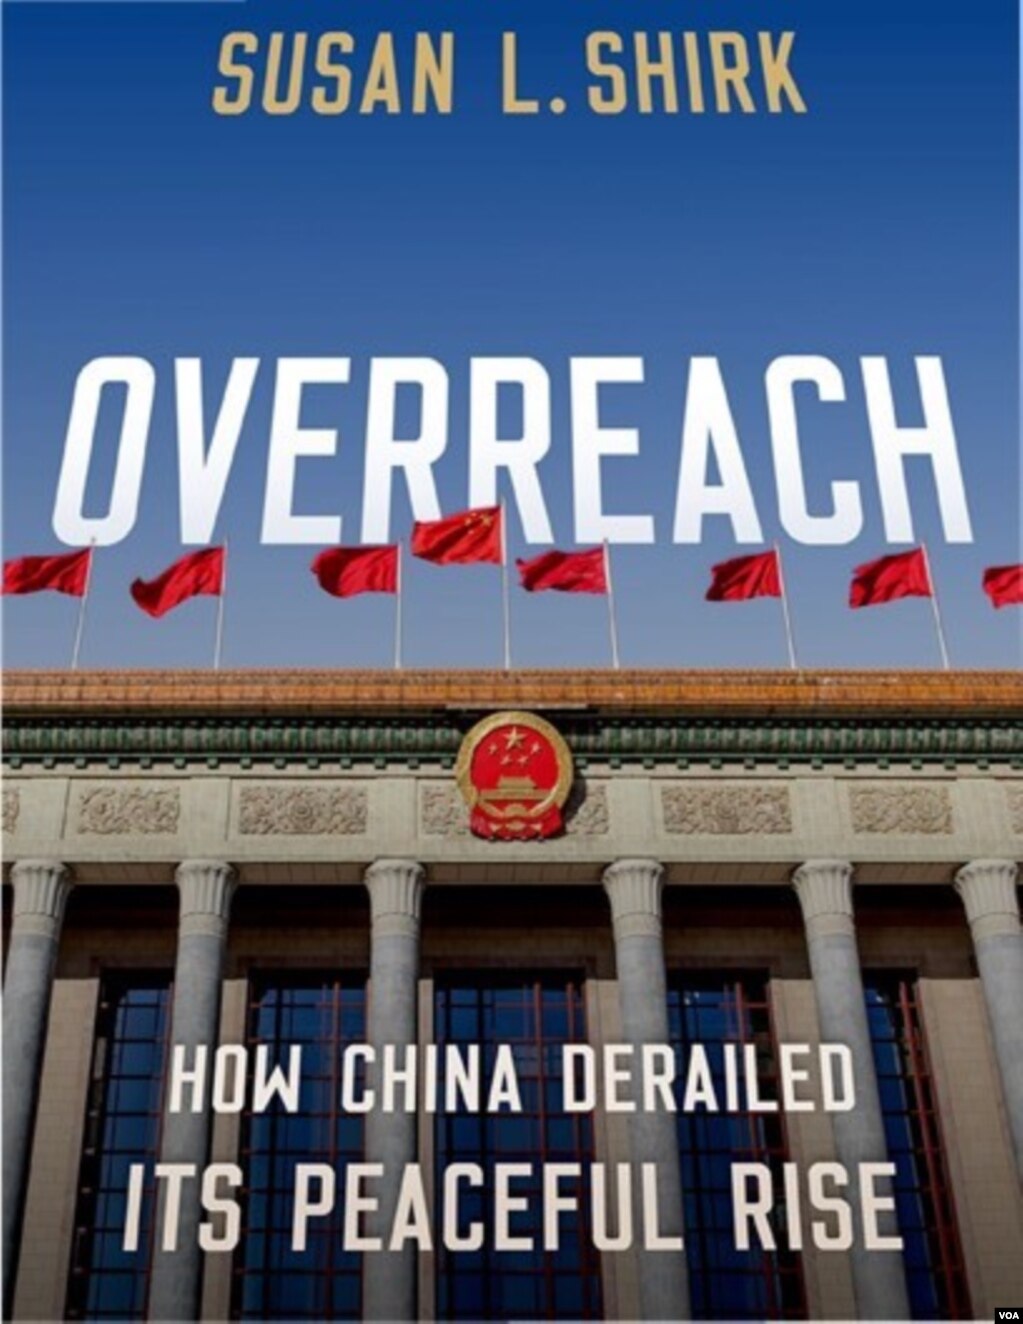 加州大学圣地亚哥分校国际政策与策略学院21世纪中国中心主席谢淑丽的新书《过度扩张，中国如何偏离了和平崛起之路》封面（Overreach: How China Derailed Its Peaceful Rise）(photo:VOA)